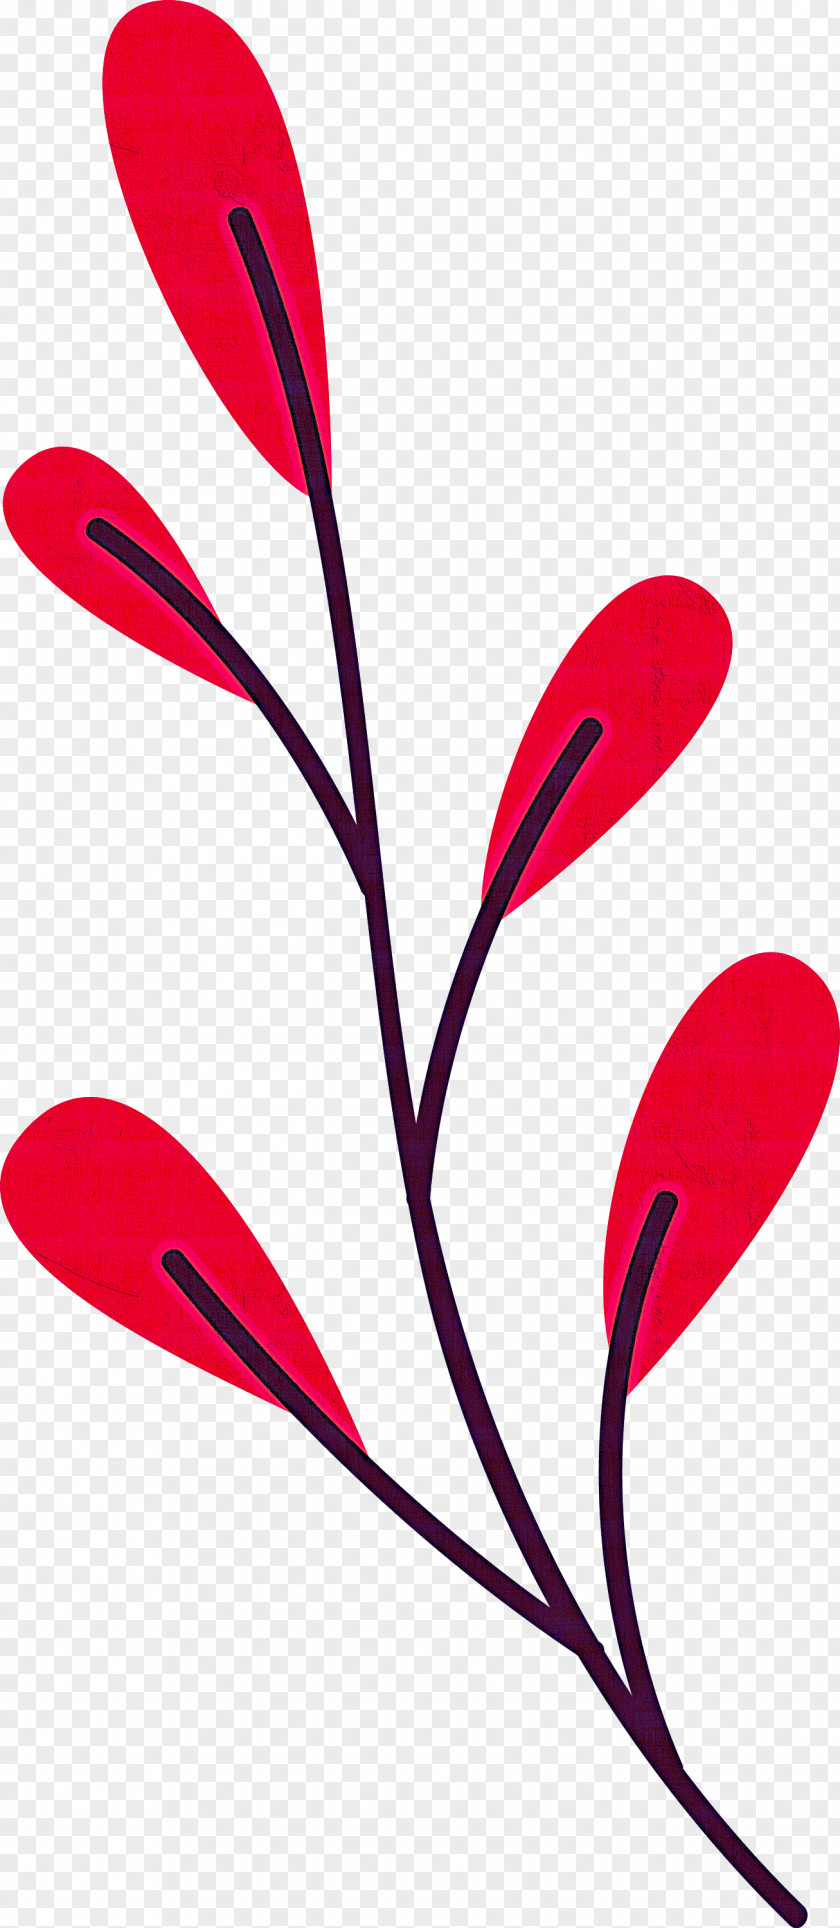 Plant Stem Petal Leaf Line Flower PNG